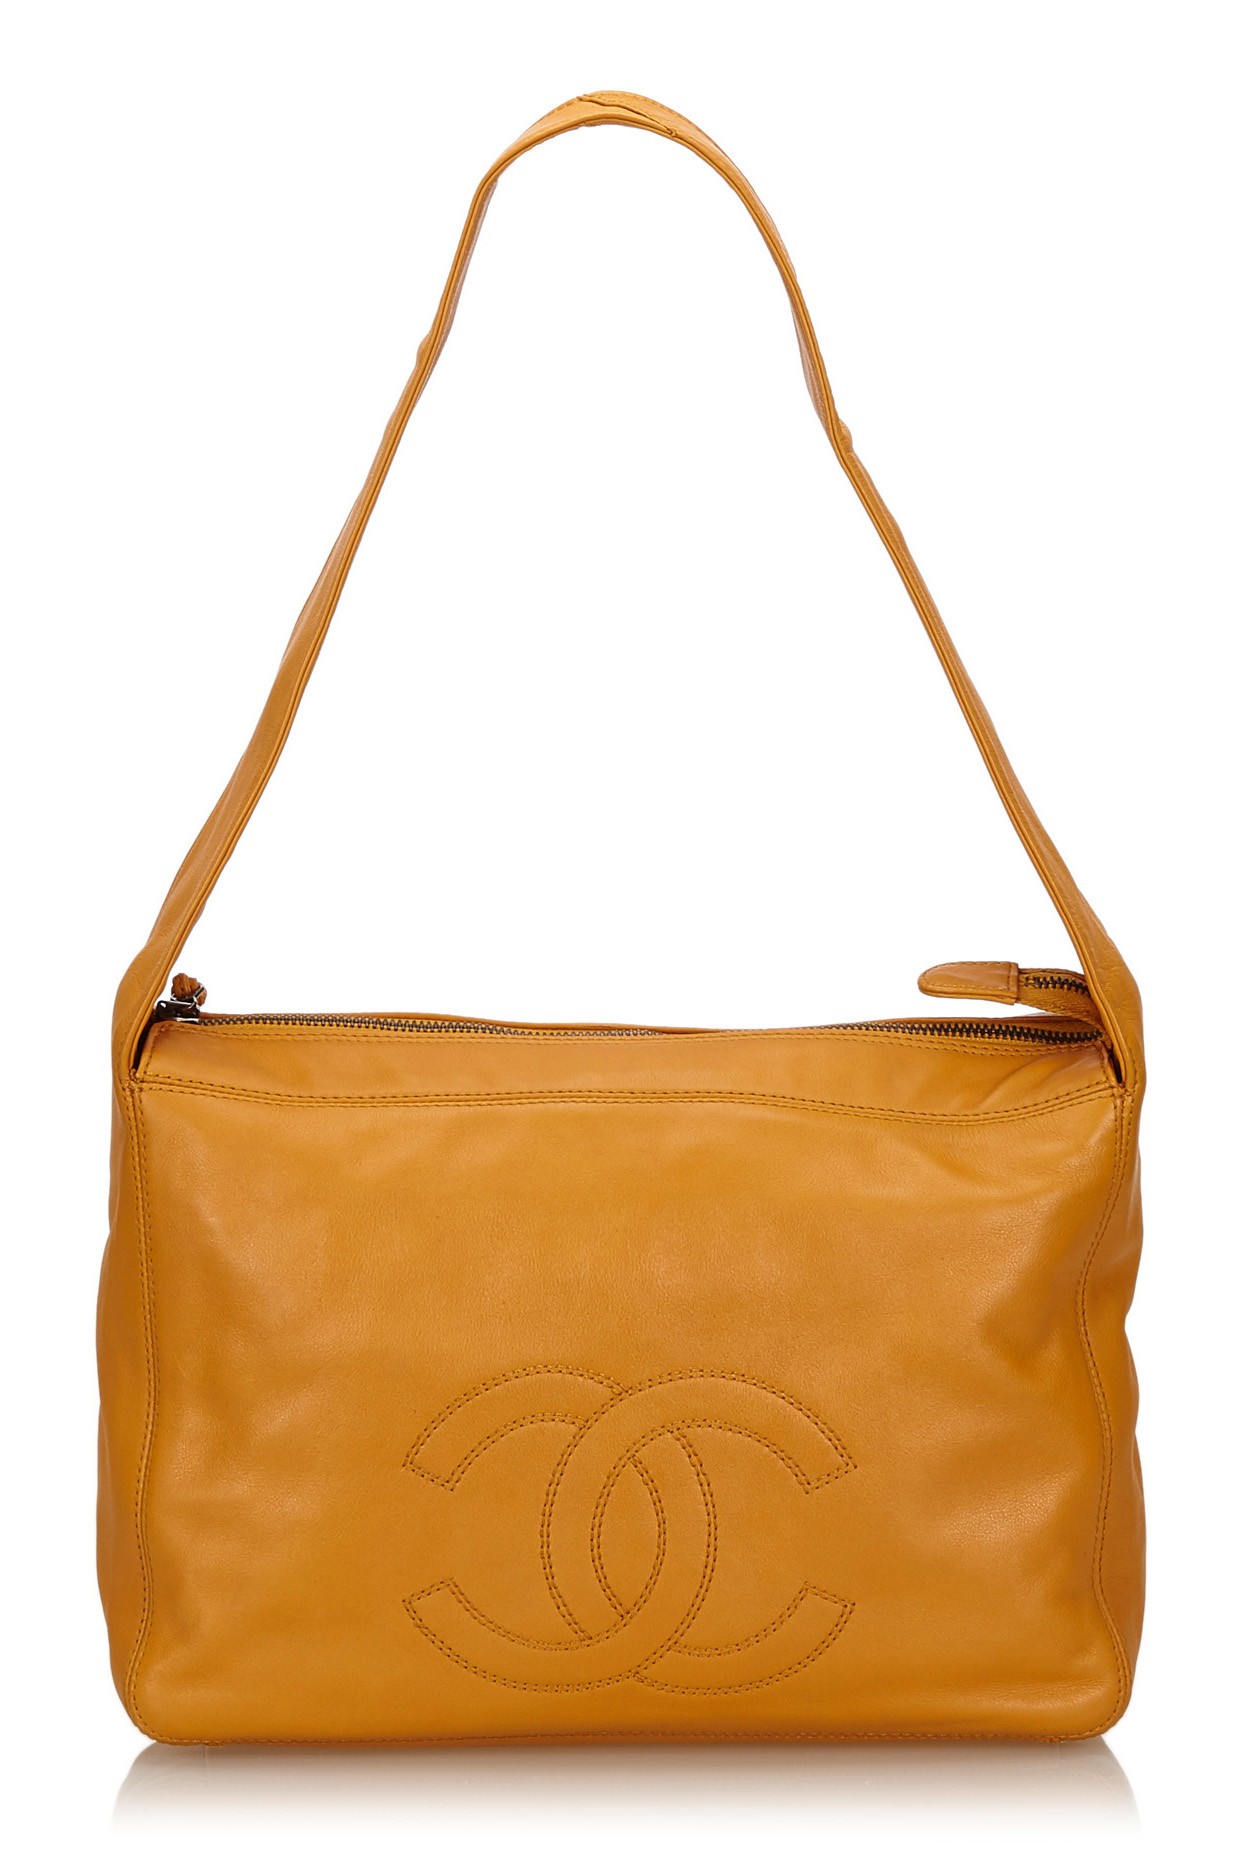 Chanel Vintage - Leather Shoulder Bag - Orange - Leather Handbag